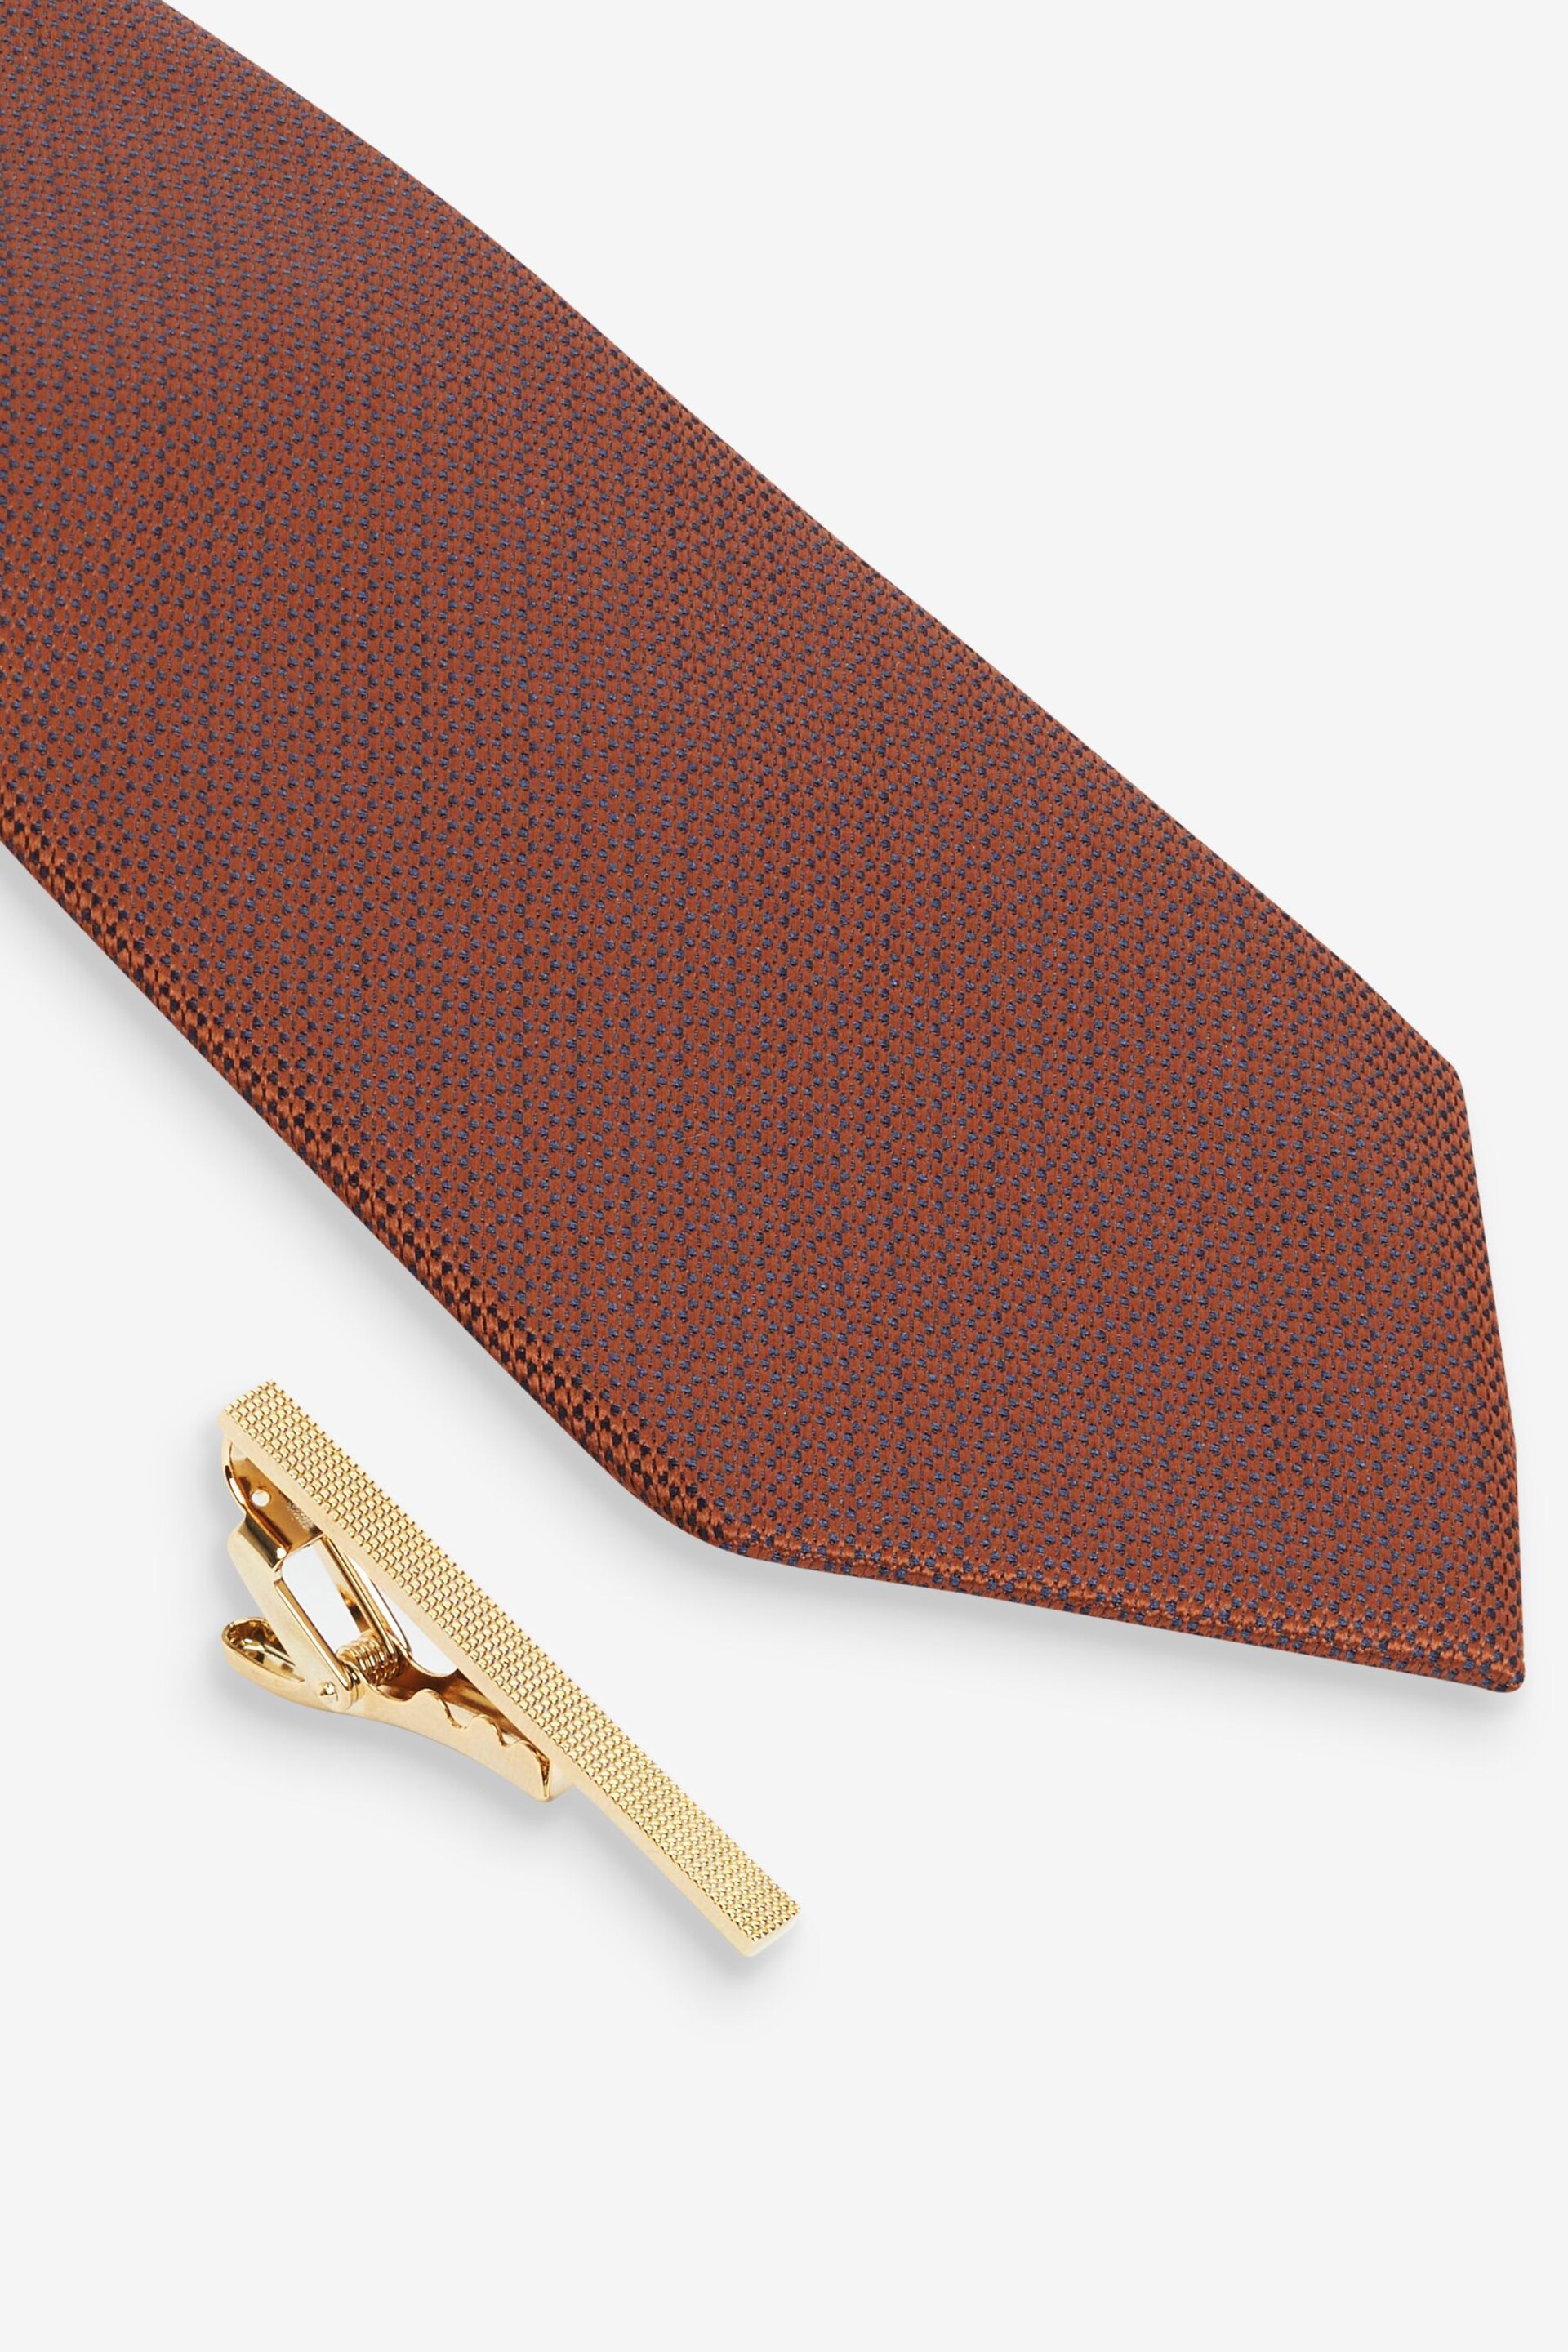 Neutral Brown/Rust Orange 2 Pack Textured Ties And Pocket Sqaure Set - Image 3 of 8